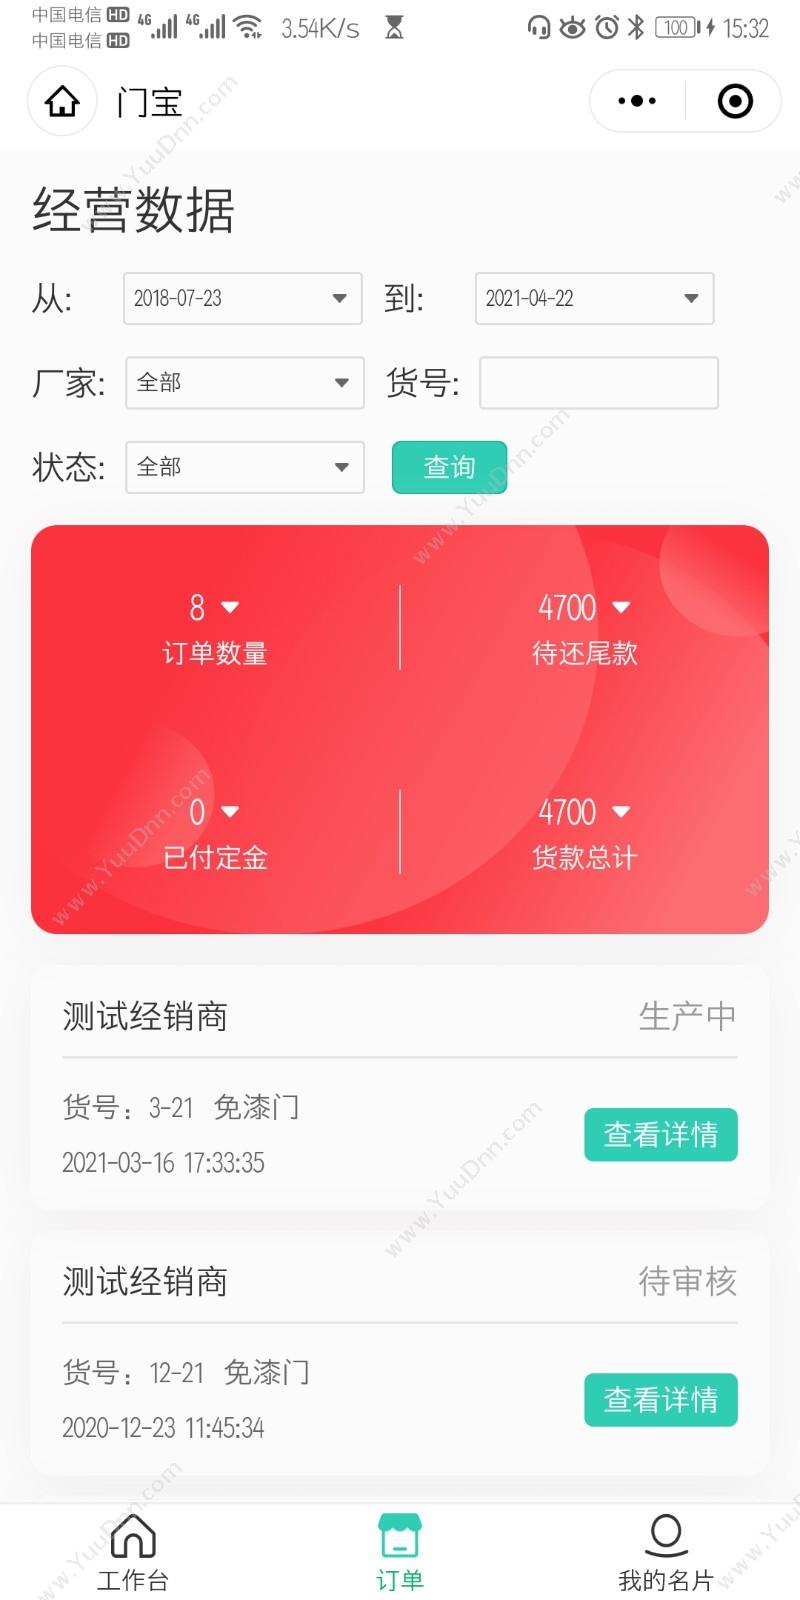 北京小云淘客科技有限公司 木门软件免费试用不限制电脑台数 企业资源计划ERP